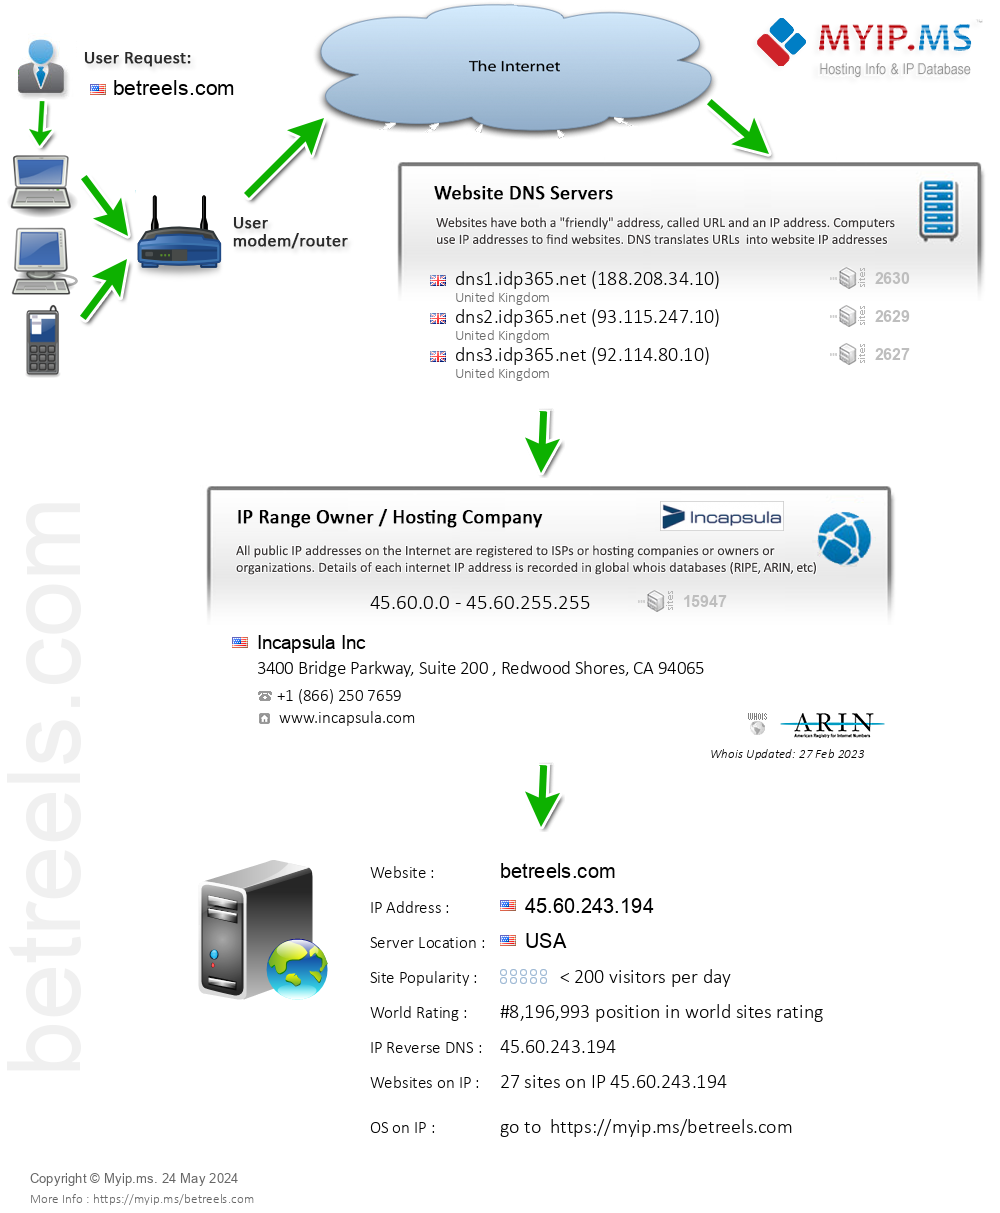 Betreels.com - Website Hosting Visual IP Diagram